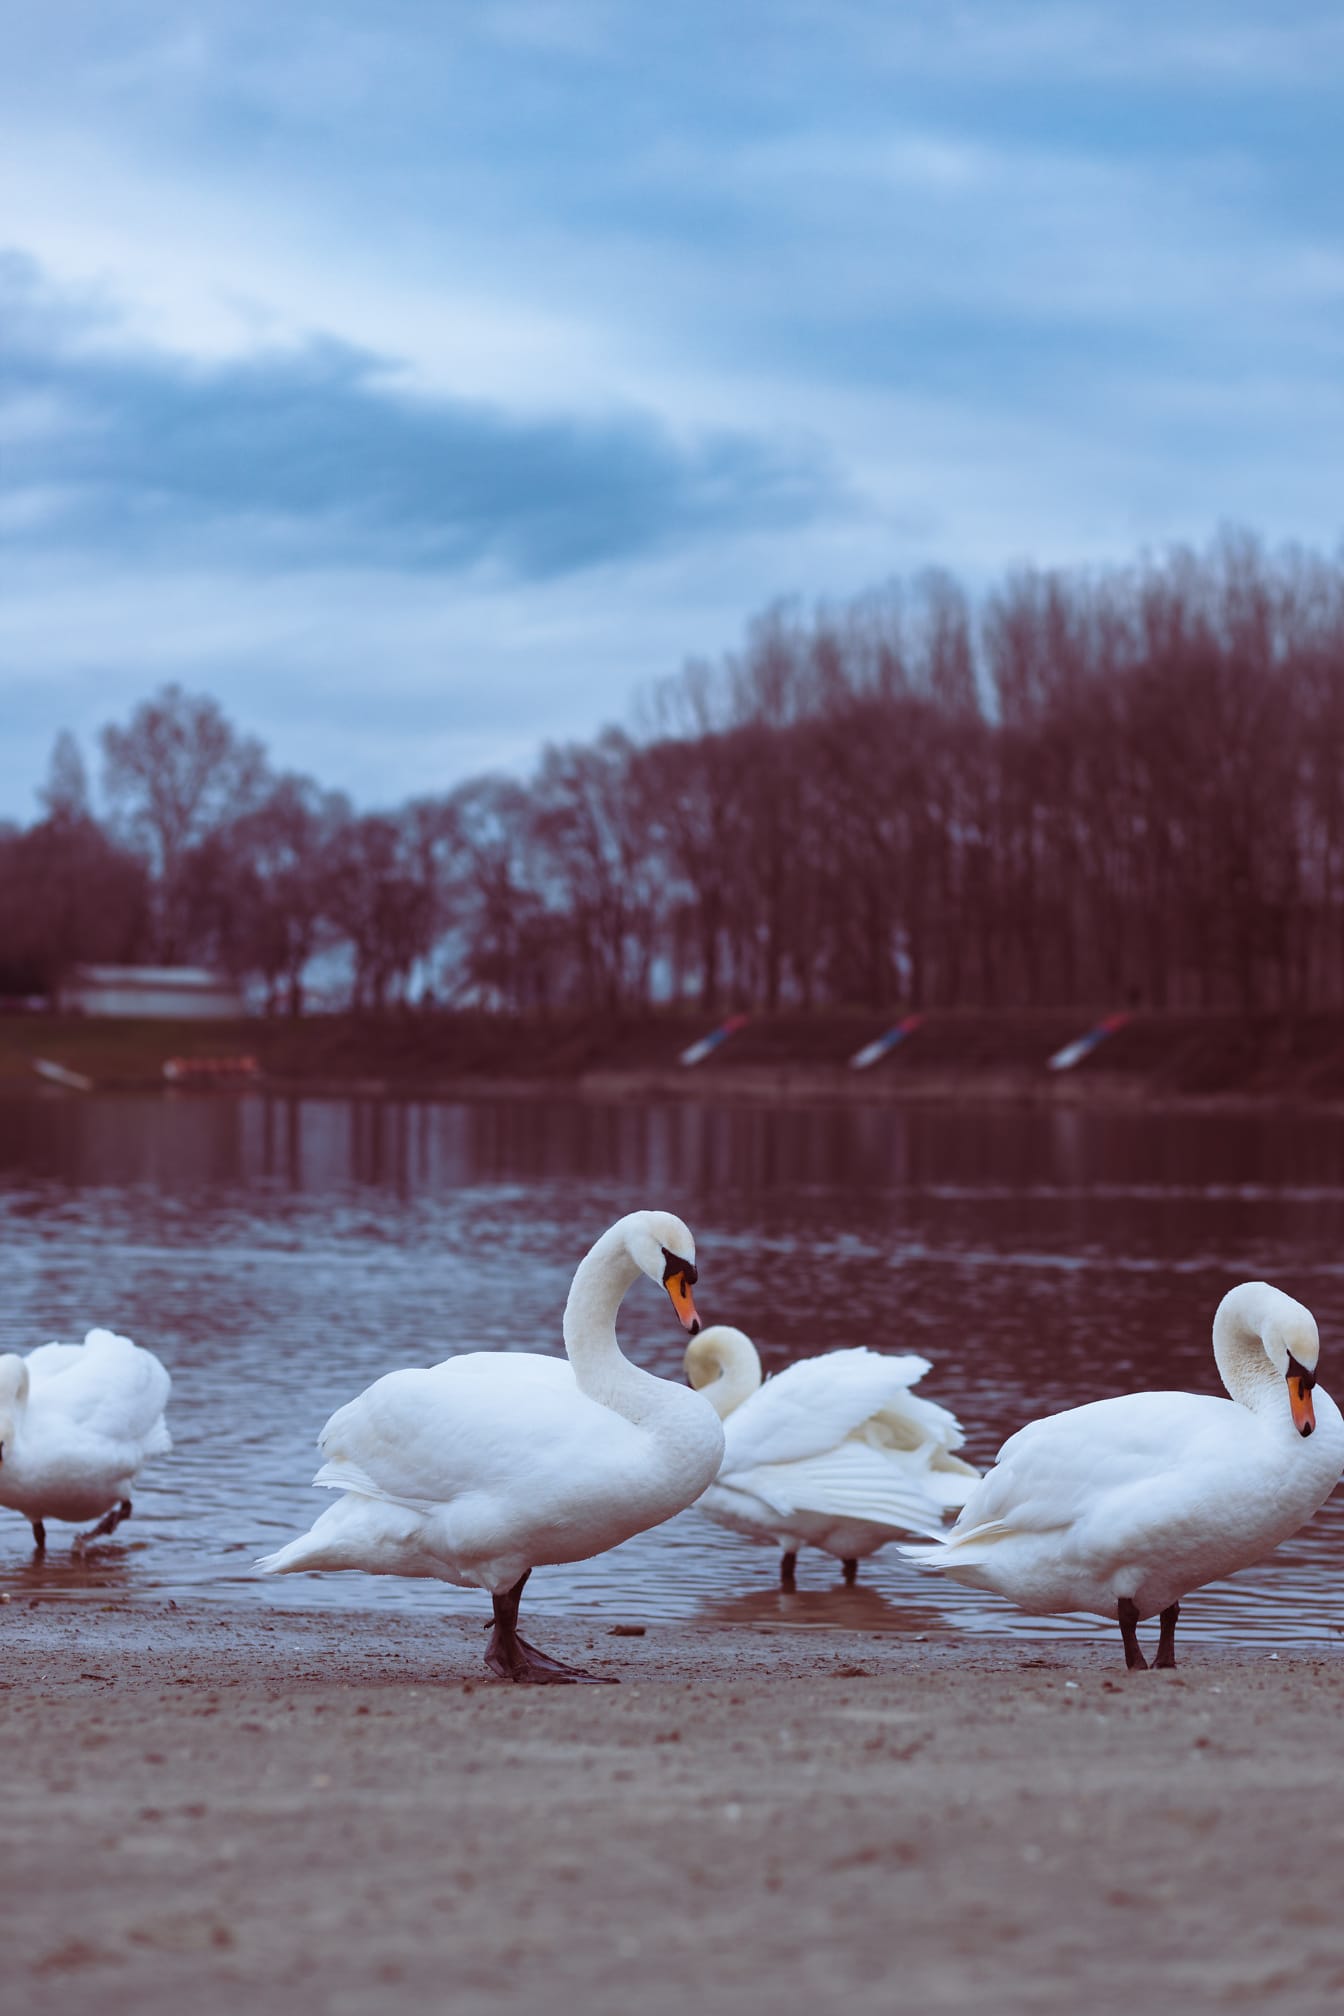 Kelompok burung angsa di tepi danau di musim gugur